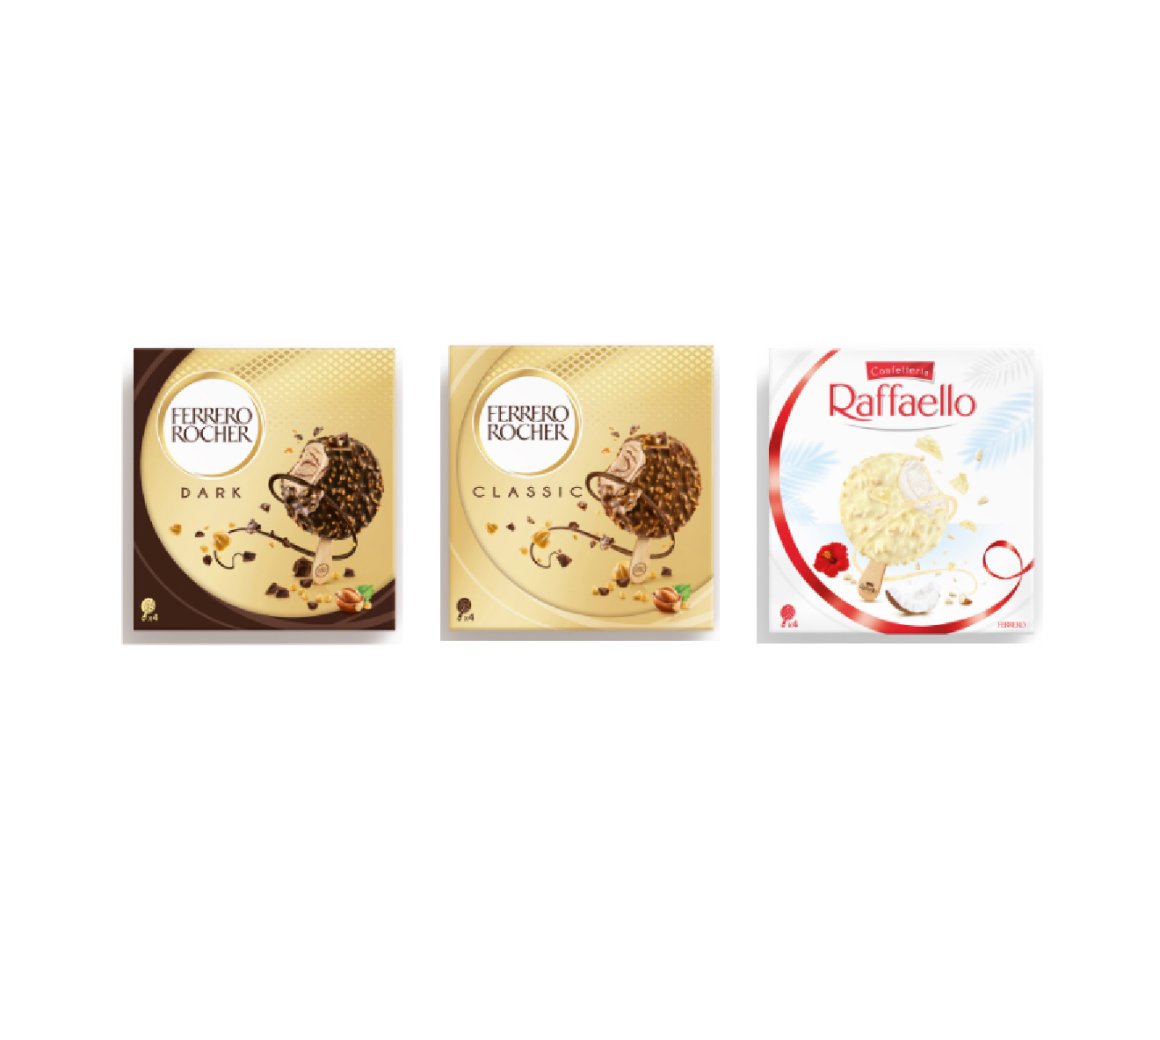 Ferrero launches into ice cream with new Ferrero Rocher and Raffaello ranges